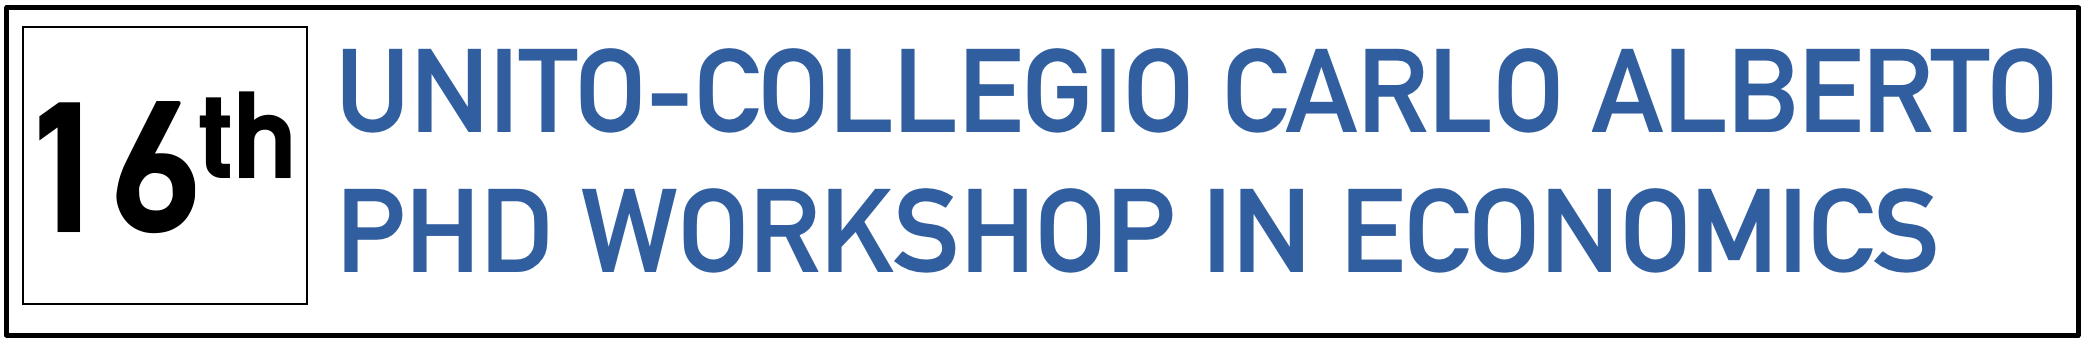 16th UniTO-Collegio carlo alberto phd workshop in economics